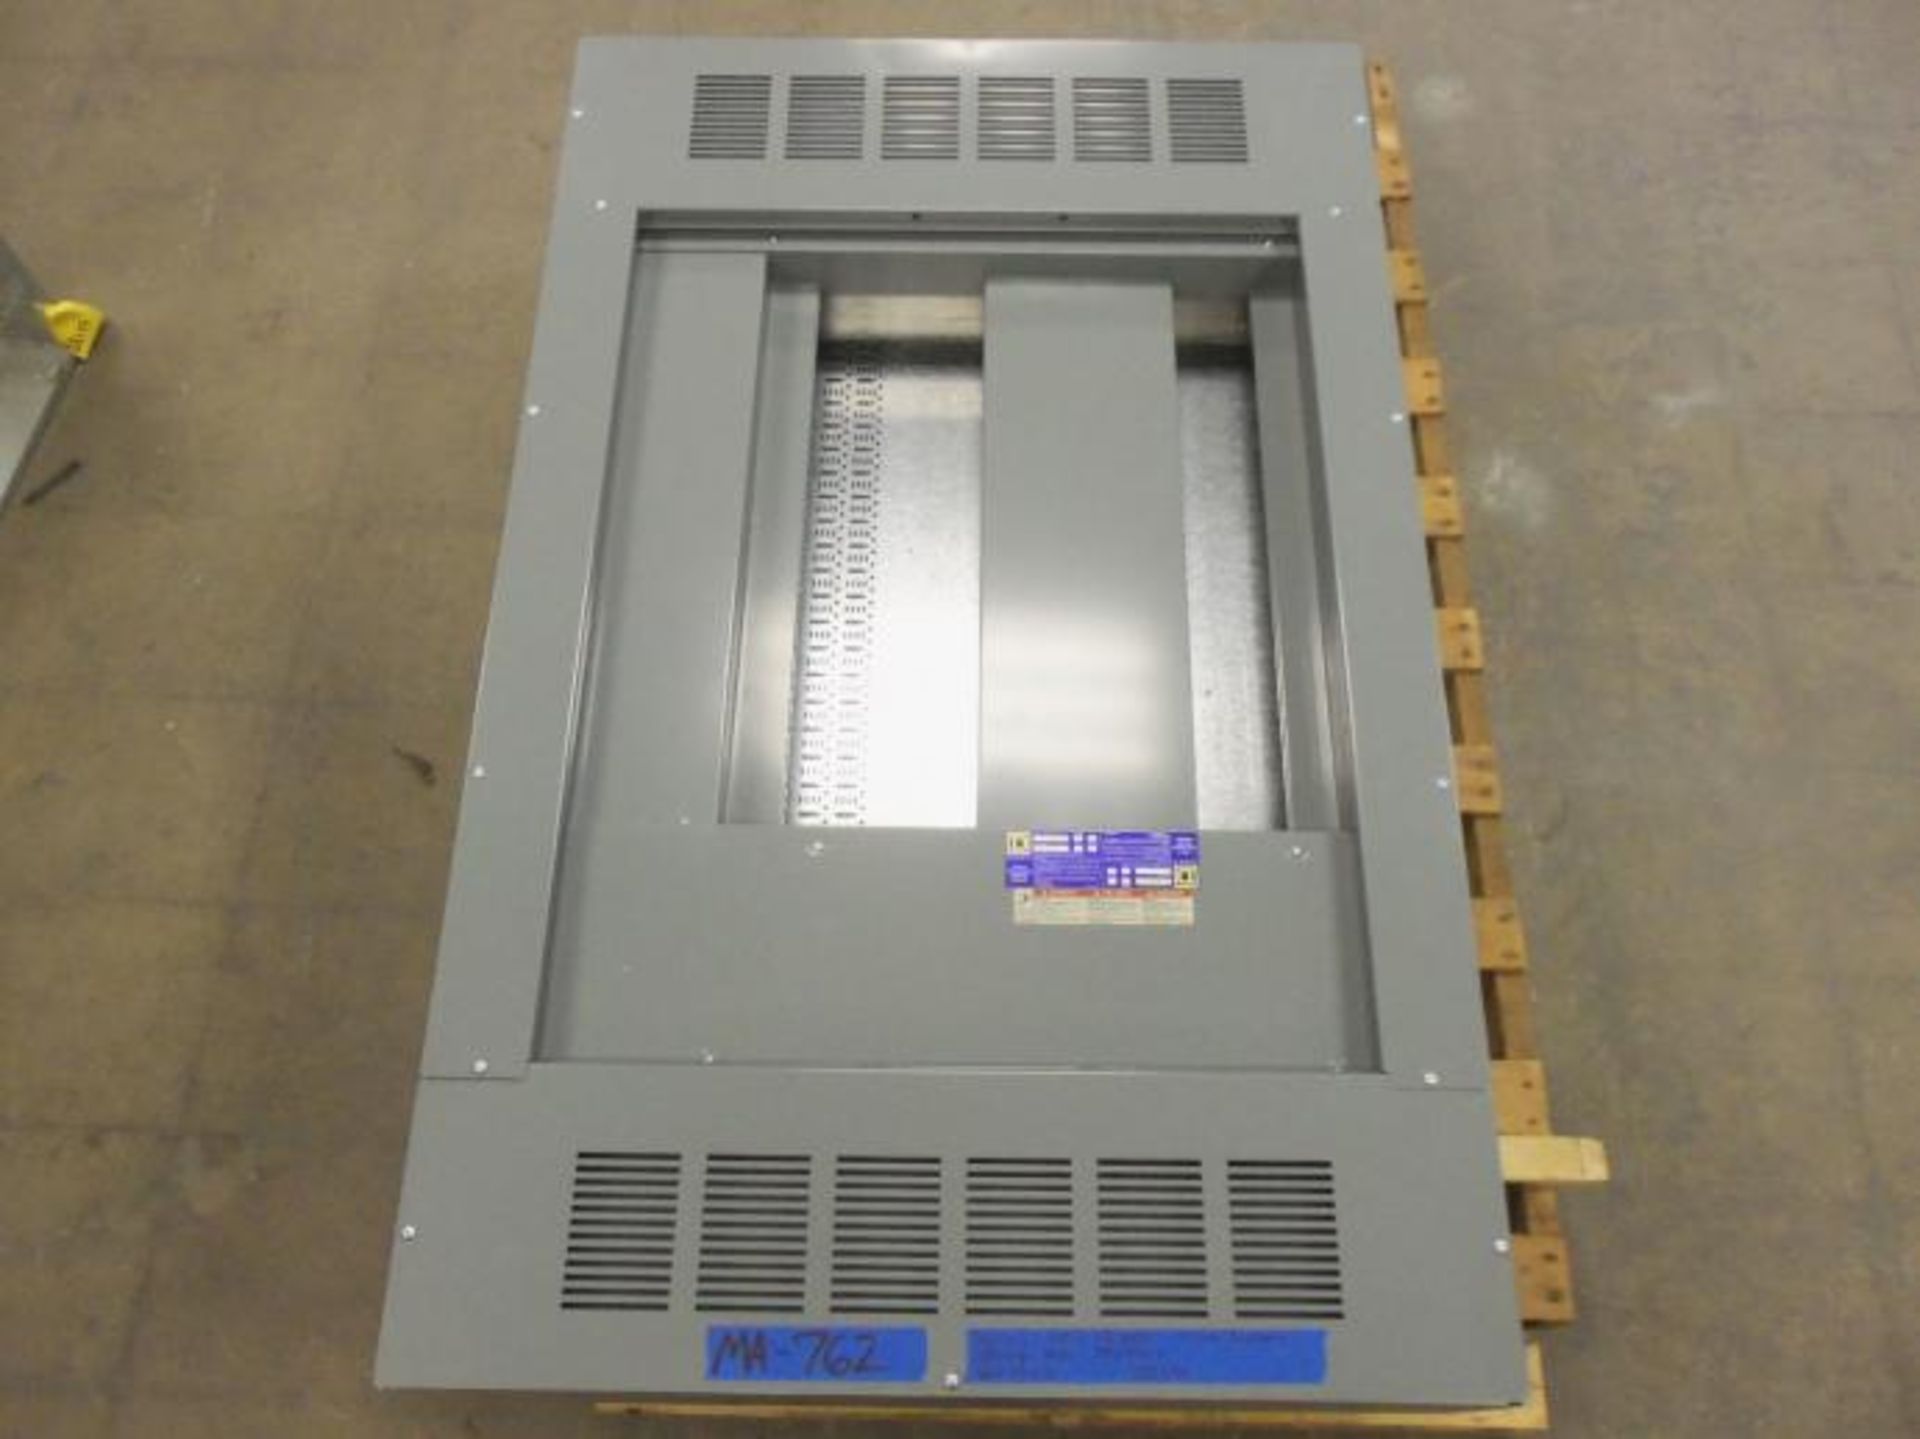 Panneau de distribution square d 1200 amp 120-240 volt - 1 phase - Panel board square d 1200 amp - Image 4 of 4